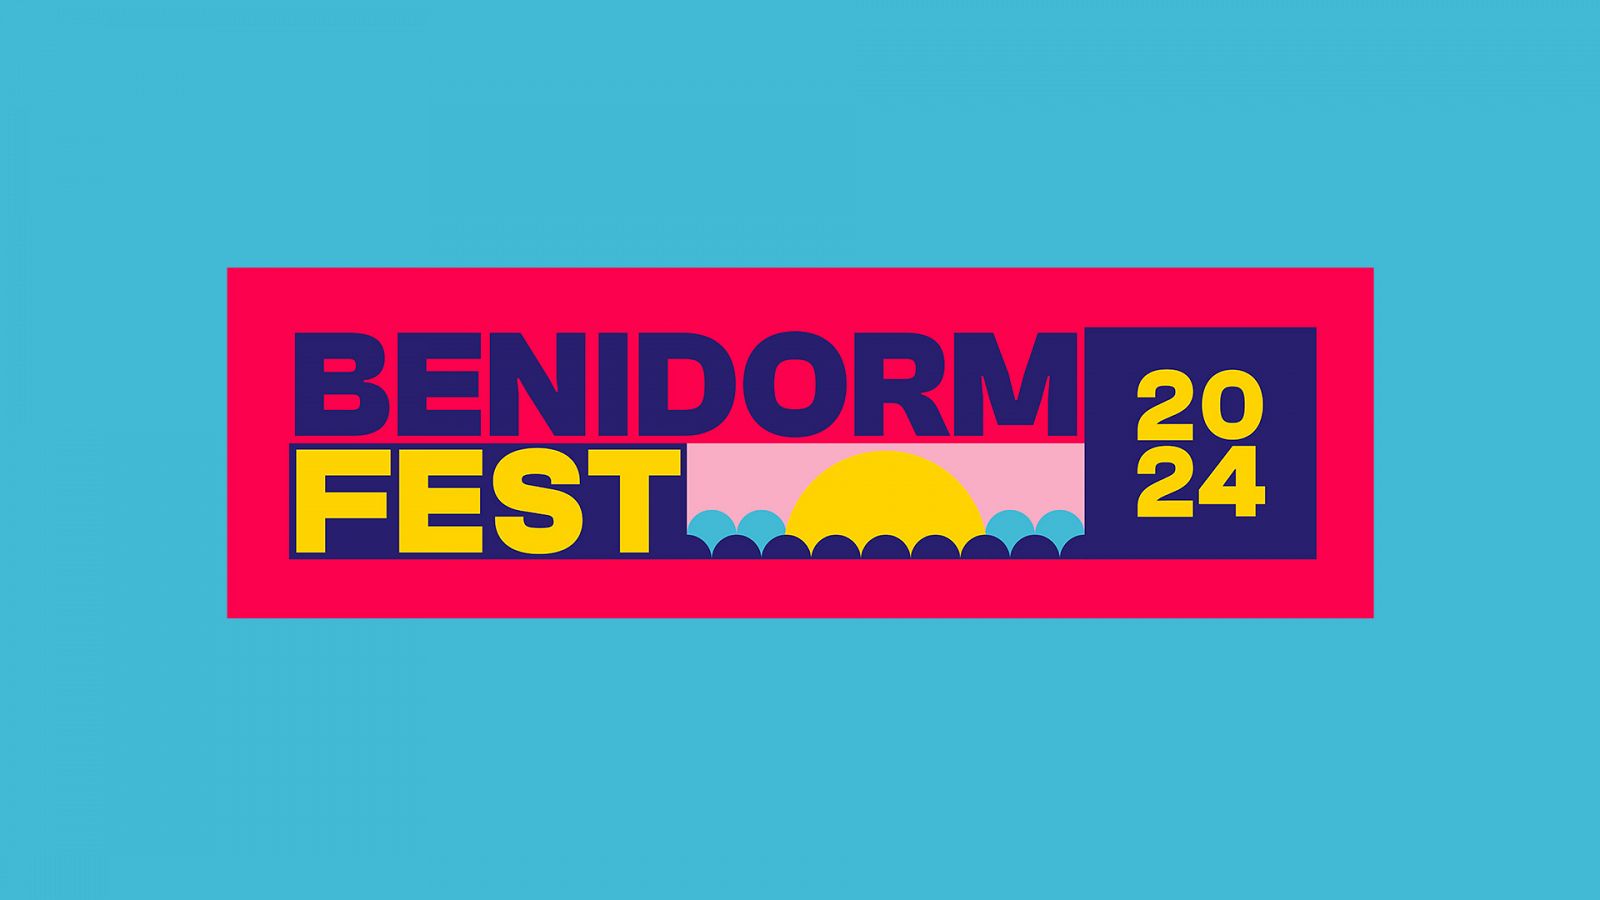 Benidorm Fest 2024 rellena el formulario y participa